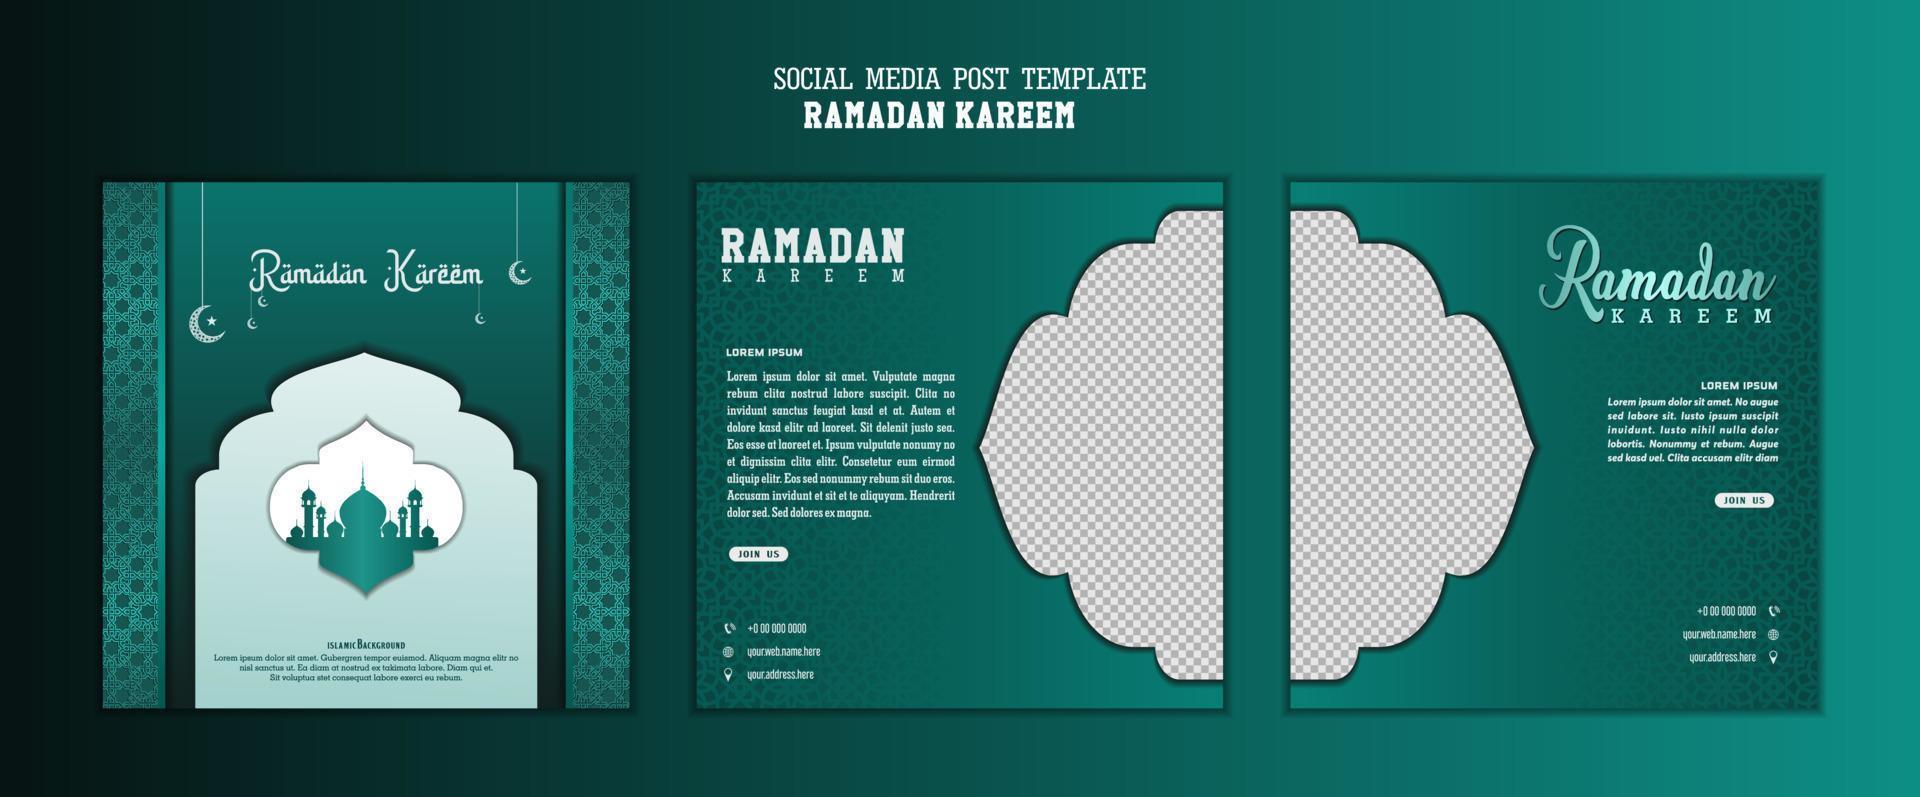 satz von social-media-beitragsvorlagen im quadratischen hintergrund mit einfachem ornamentdesign für ramadan kareem. gute vorlage für islamisches feierdesign. vektor